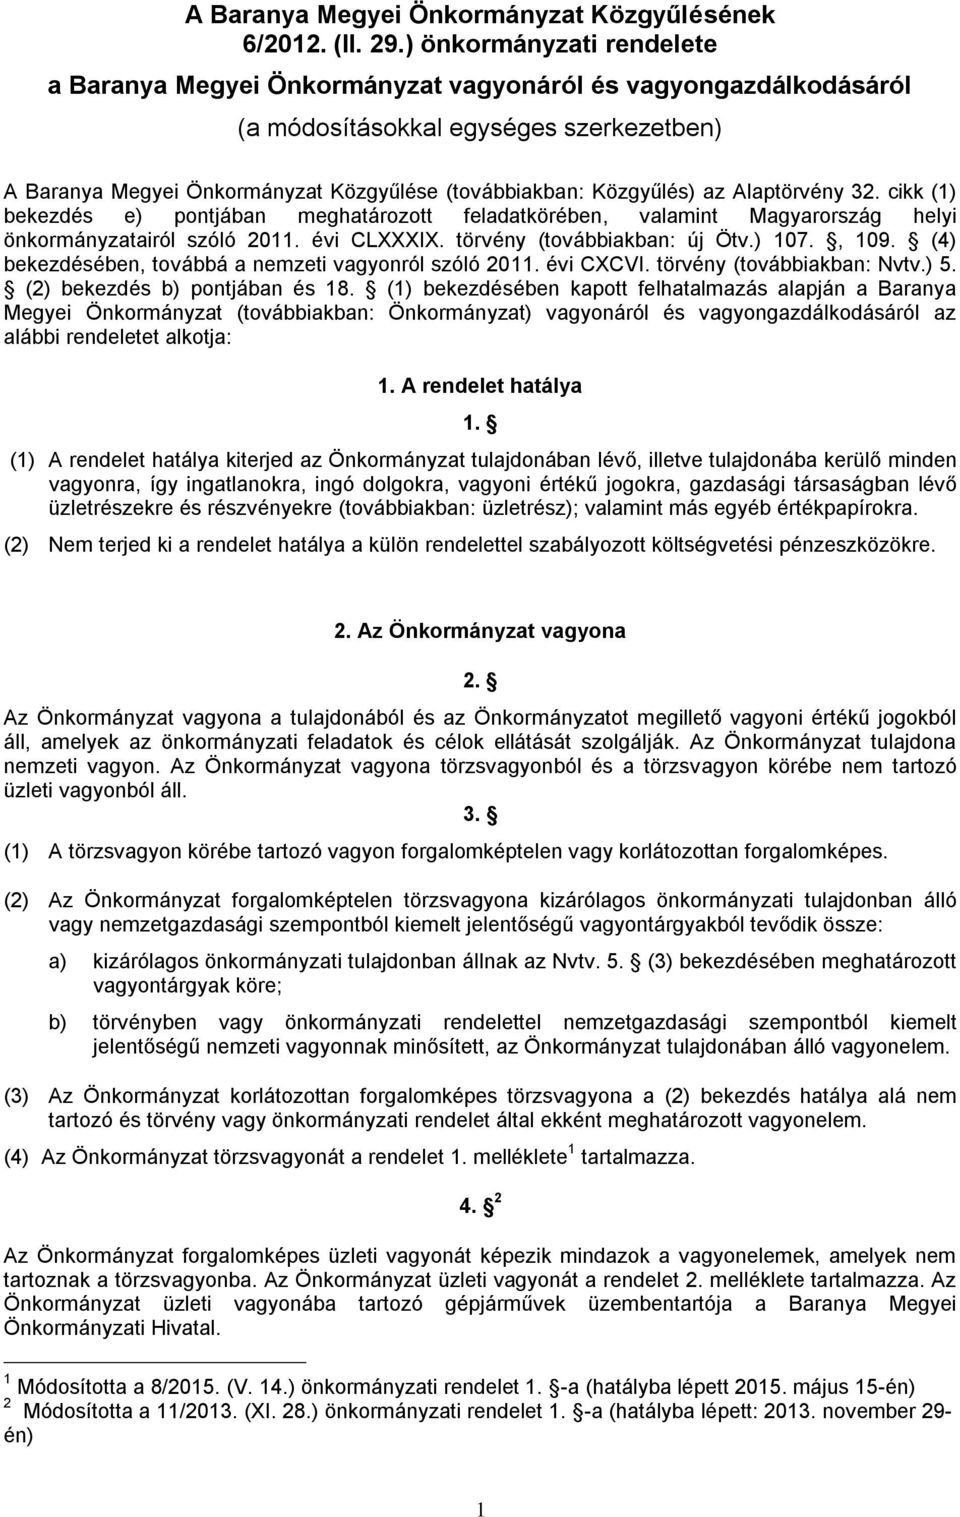 cikk (1) bekezdés e) pontjában meghatározott feladatkörében, valamint Magyarország helyi önkormányzatairól szóló 2011. évi CLXXXIX. törvény (továbbiakban: új Ötv.) 107., 109.